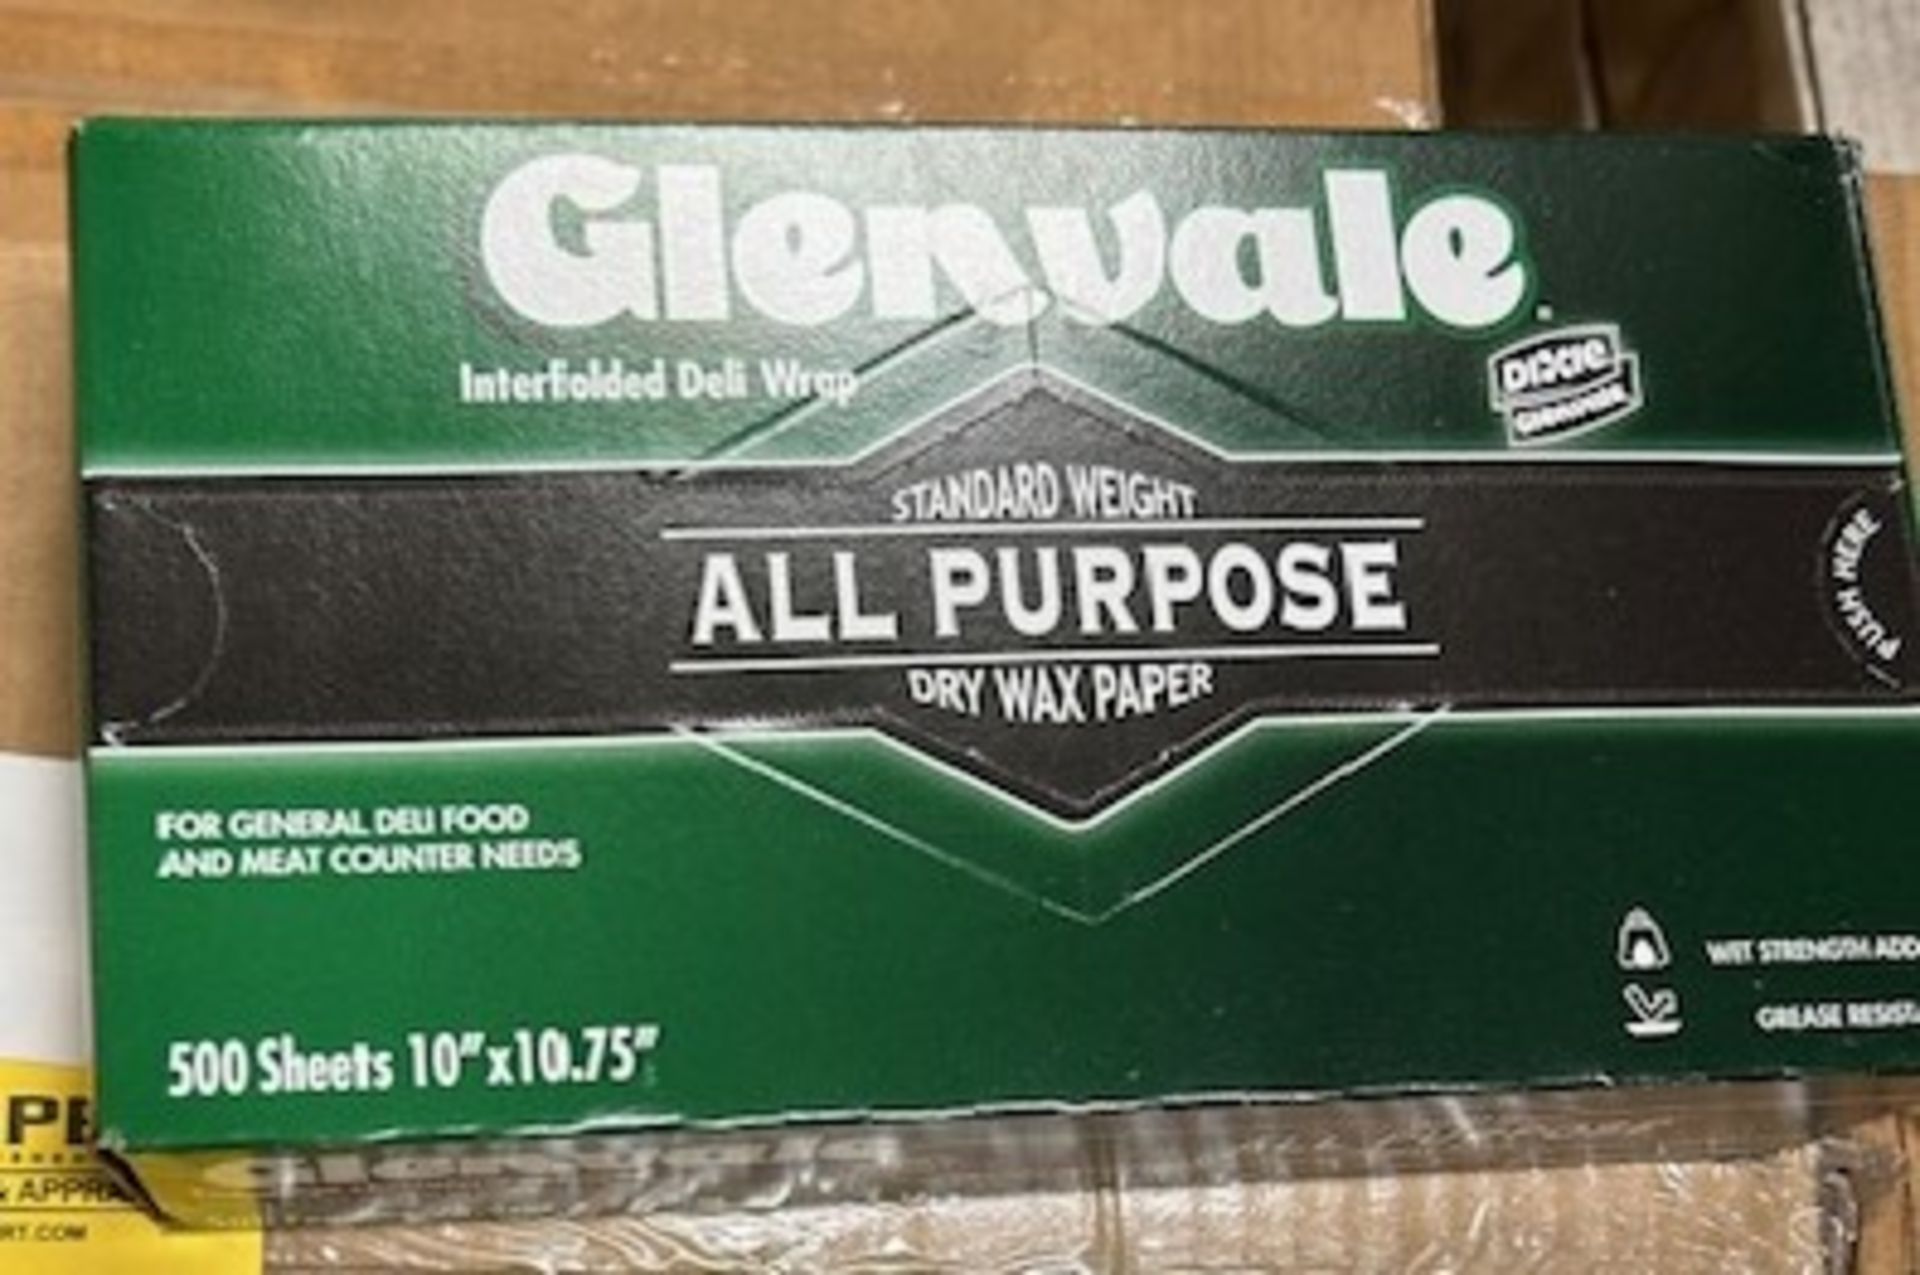 (24) Boxes - G10SF Glenvale 10"x 10-3/4" Deli Wrap (500/Box)